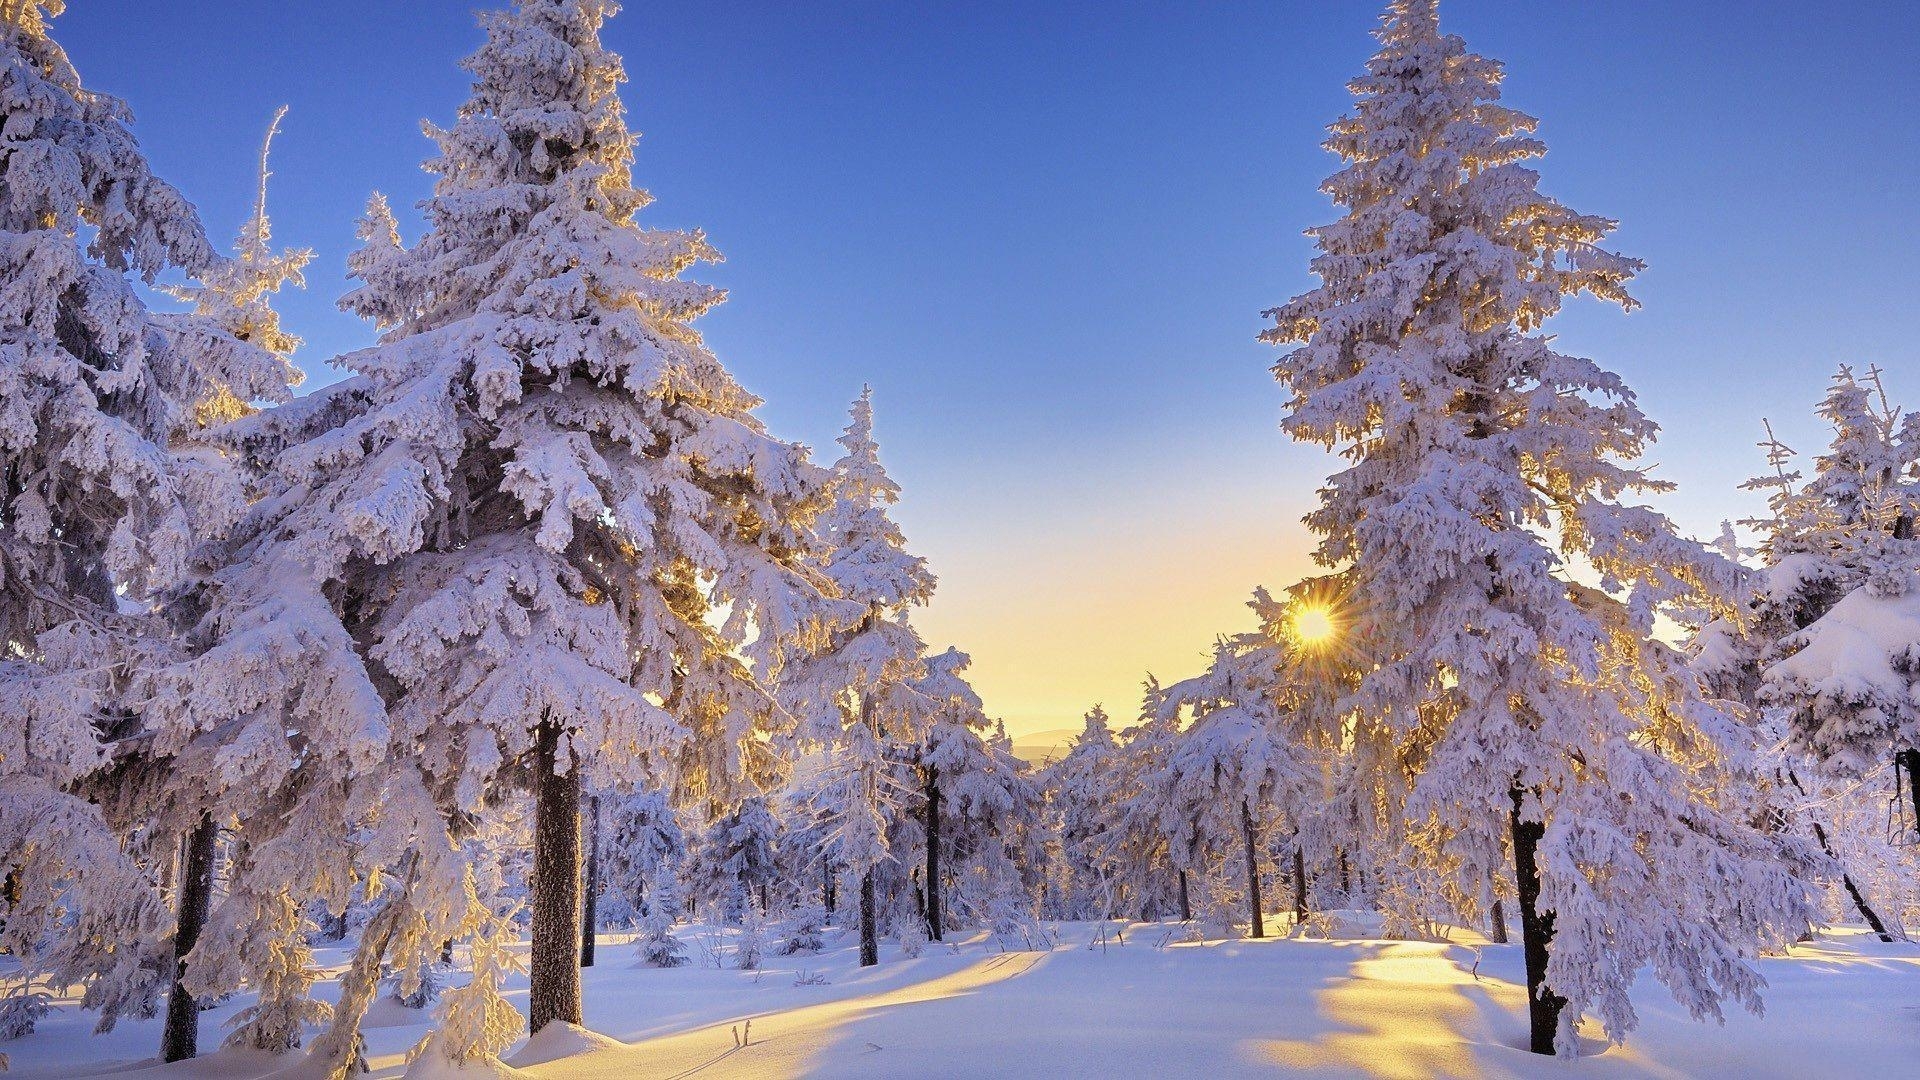 10 Latest Winter Wonderland Backgrounds For Desktop FULL HD 1080p For PC Desktop